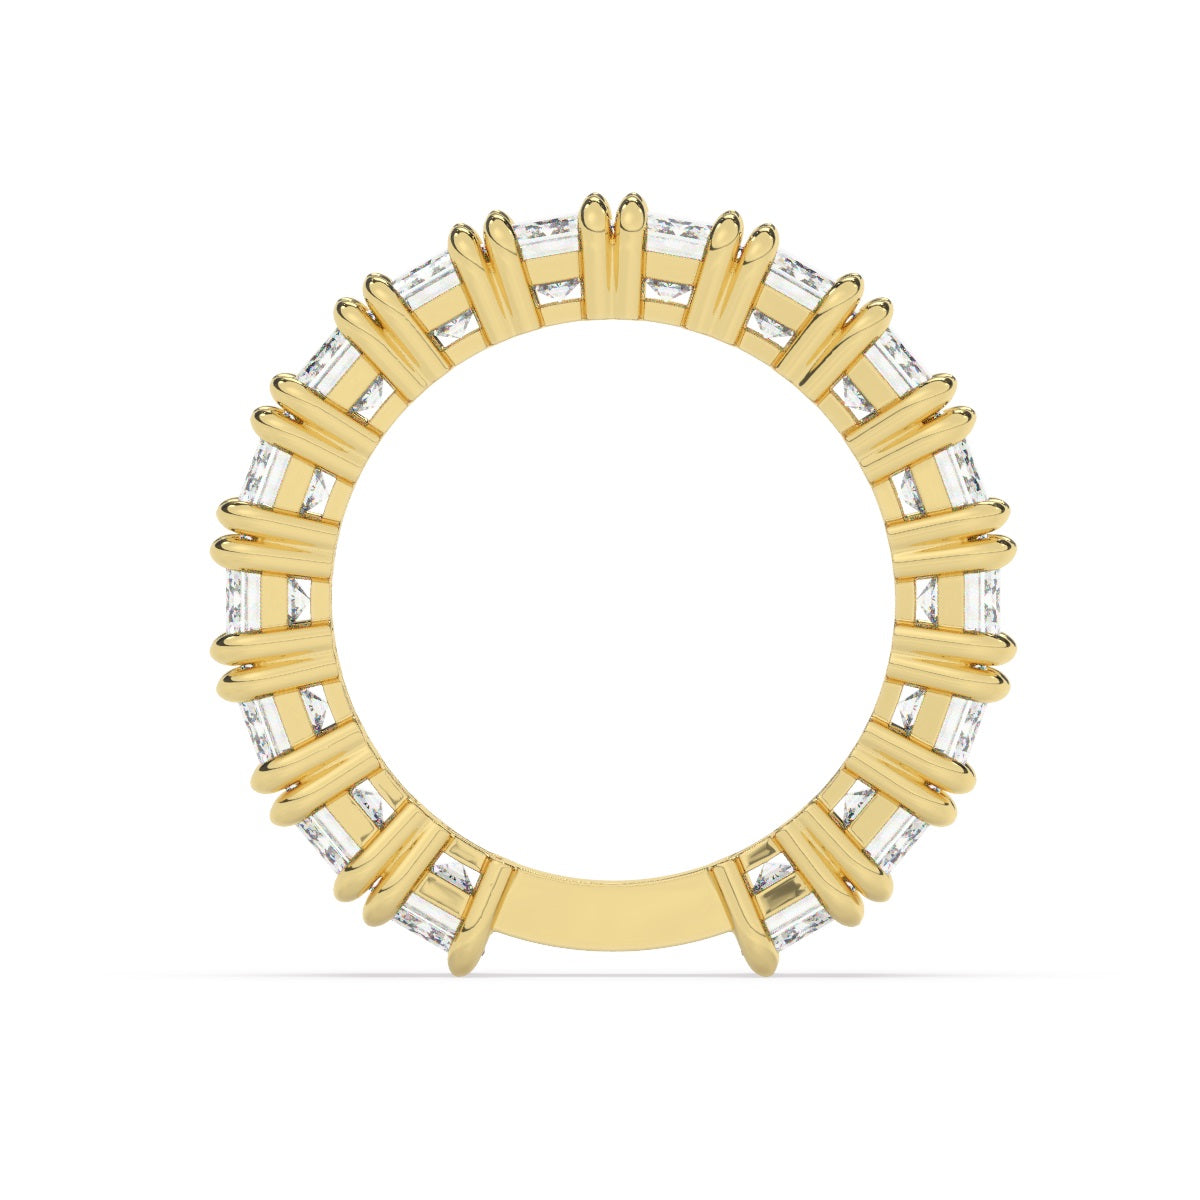 14k White Gold Diamond Ring V0364